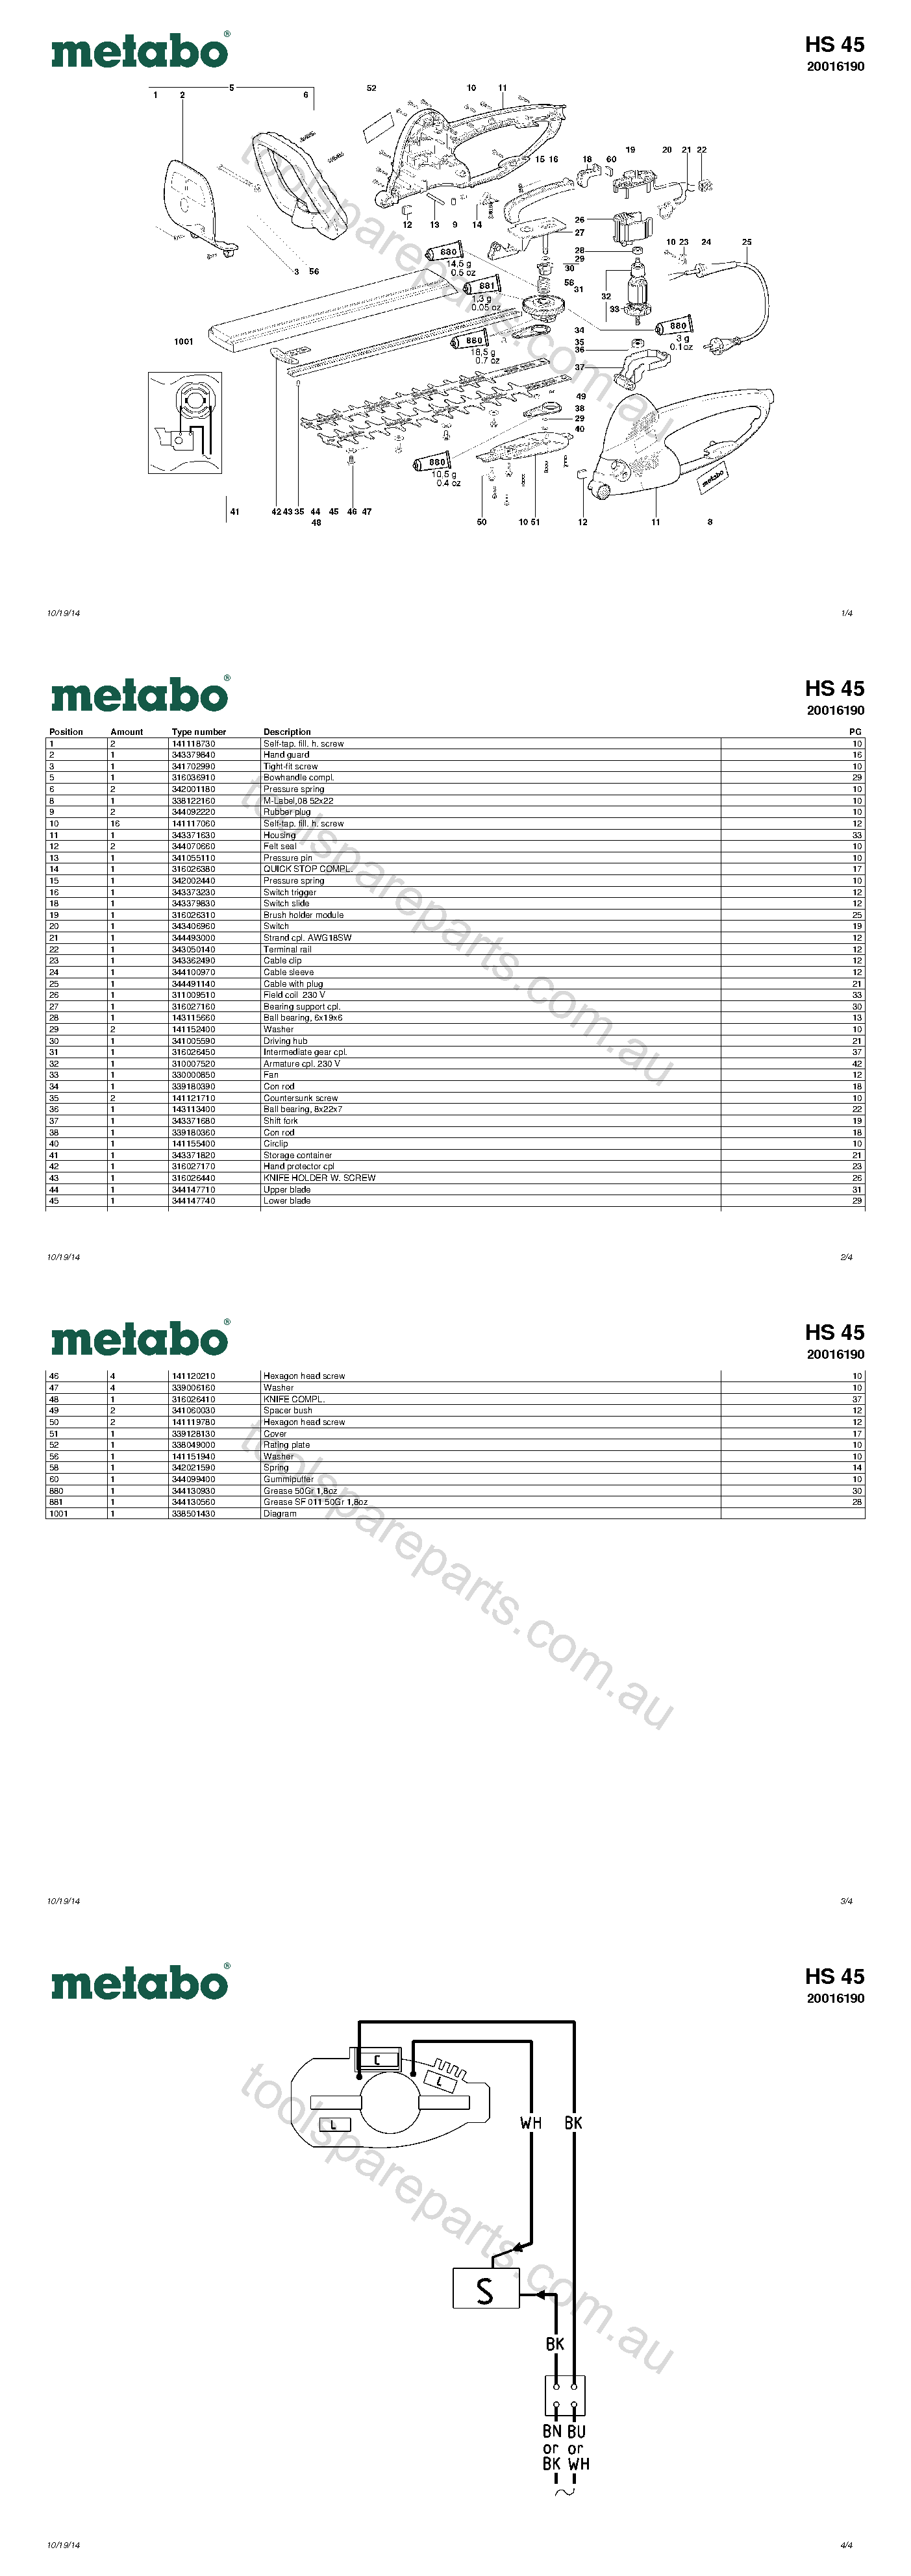 Metabo HS 45 20016190  Diagram 1